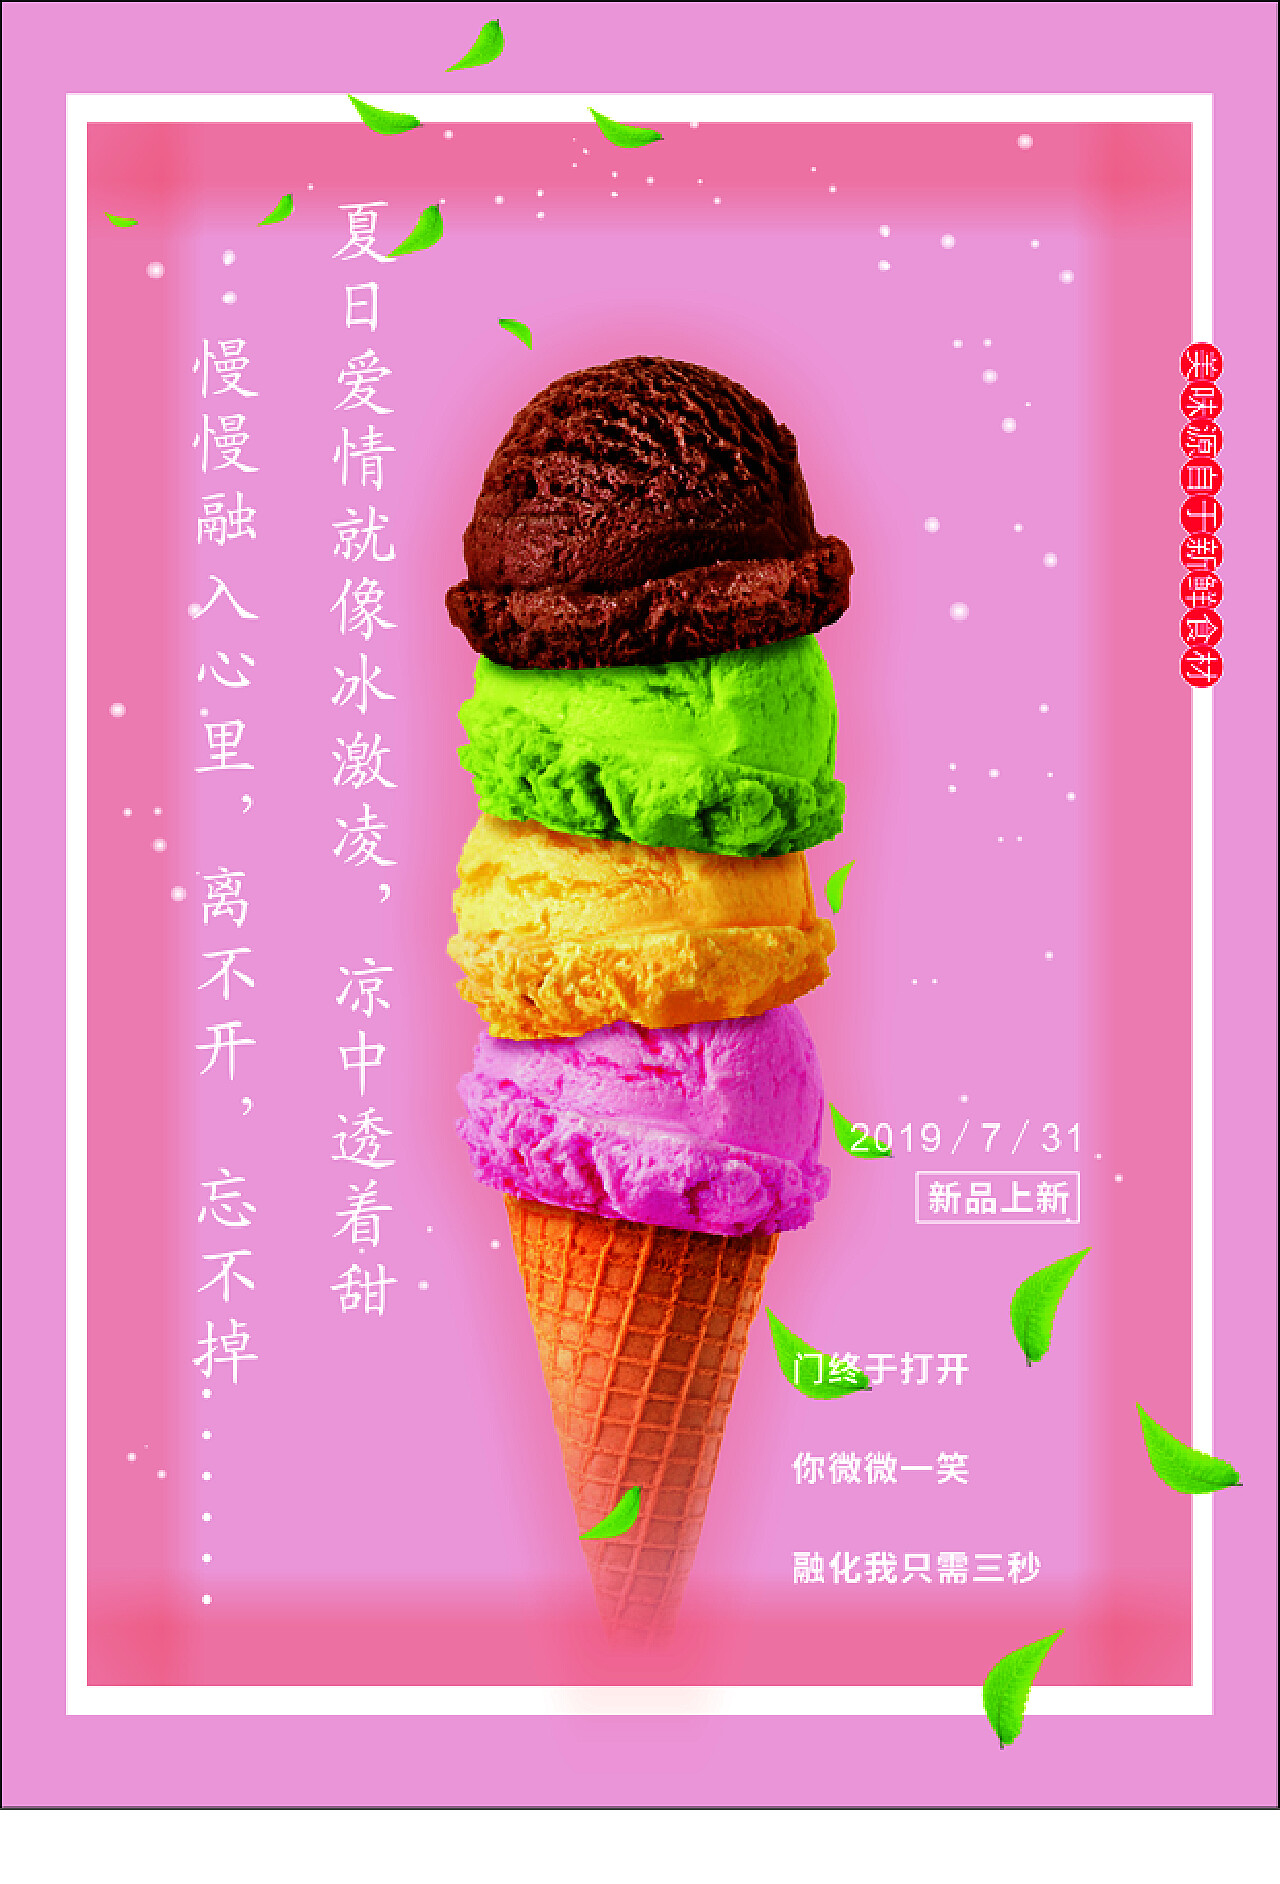 高清壁纸下载-冰激凌ice cream高清4动态壁纸- macw下载站